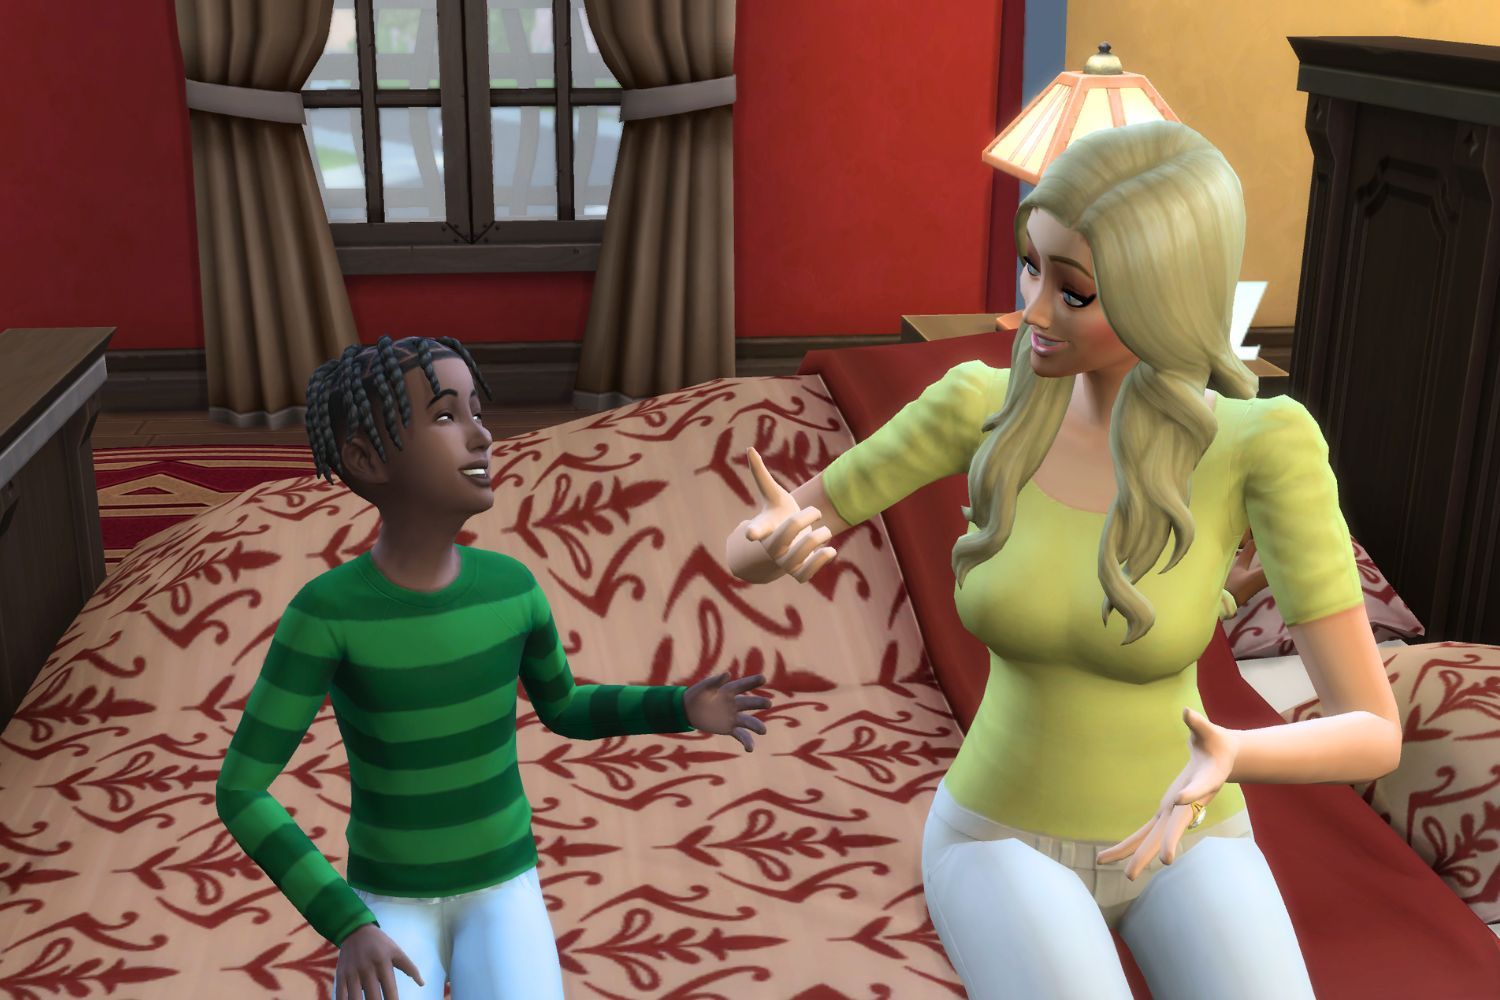 In einem Screenshot von Die Sims 4 spricht ein Kinder-Sim in einem grün gestreiften Pullover höflich mit einer Mutterfigur, die ein gelbes Hemd und weiße Hosen trägt.